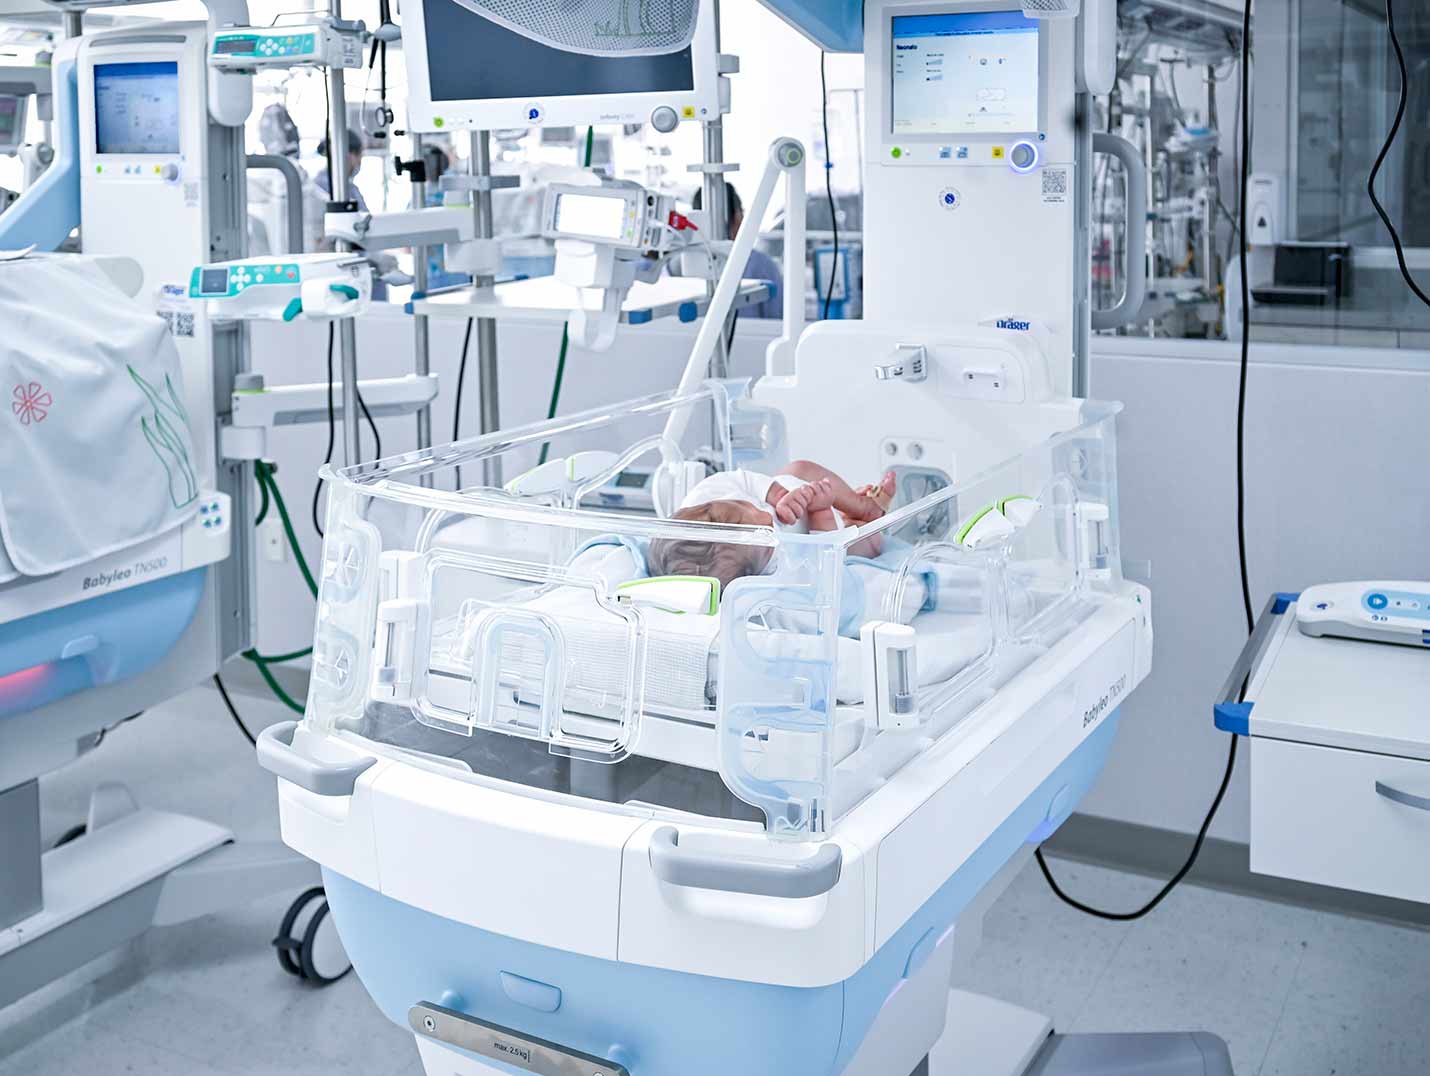 Bebé recién nacido dentro de una incubadora de color blanco y azul. A su lado hay un monitor de signos vitales